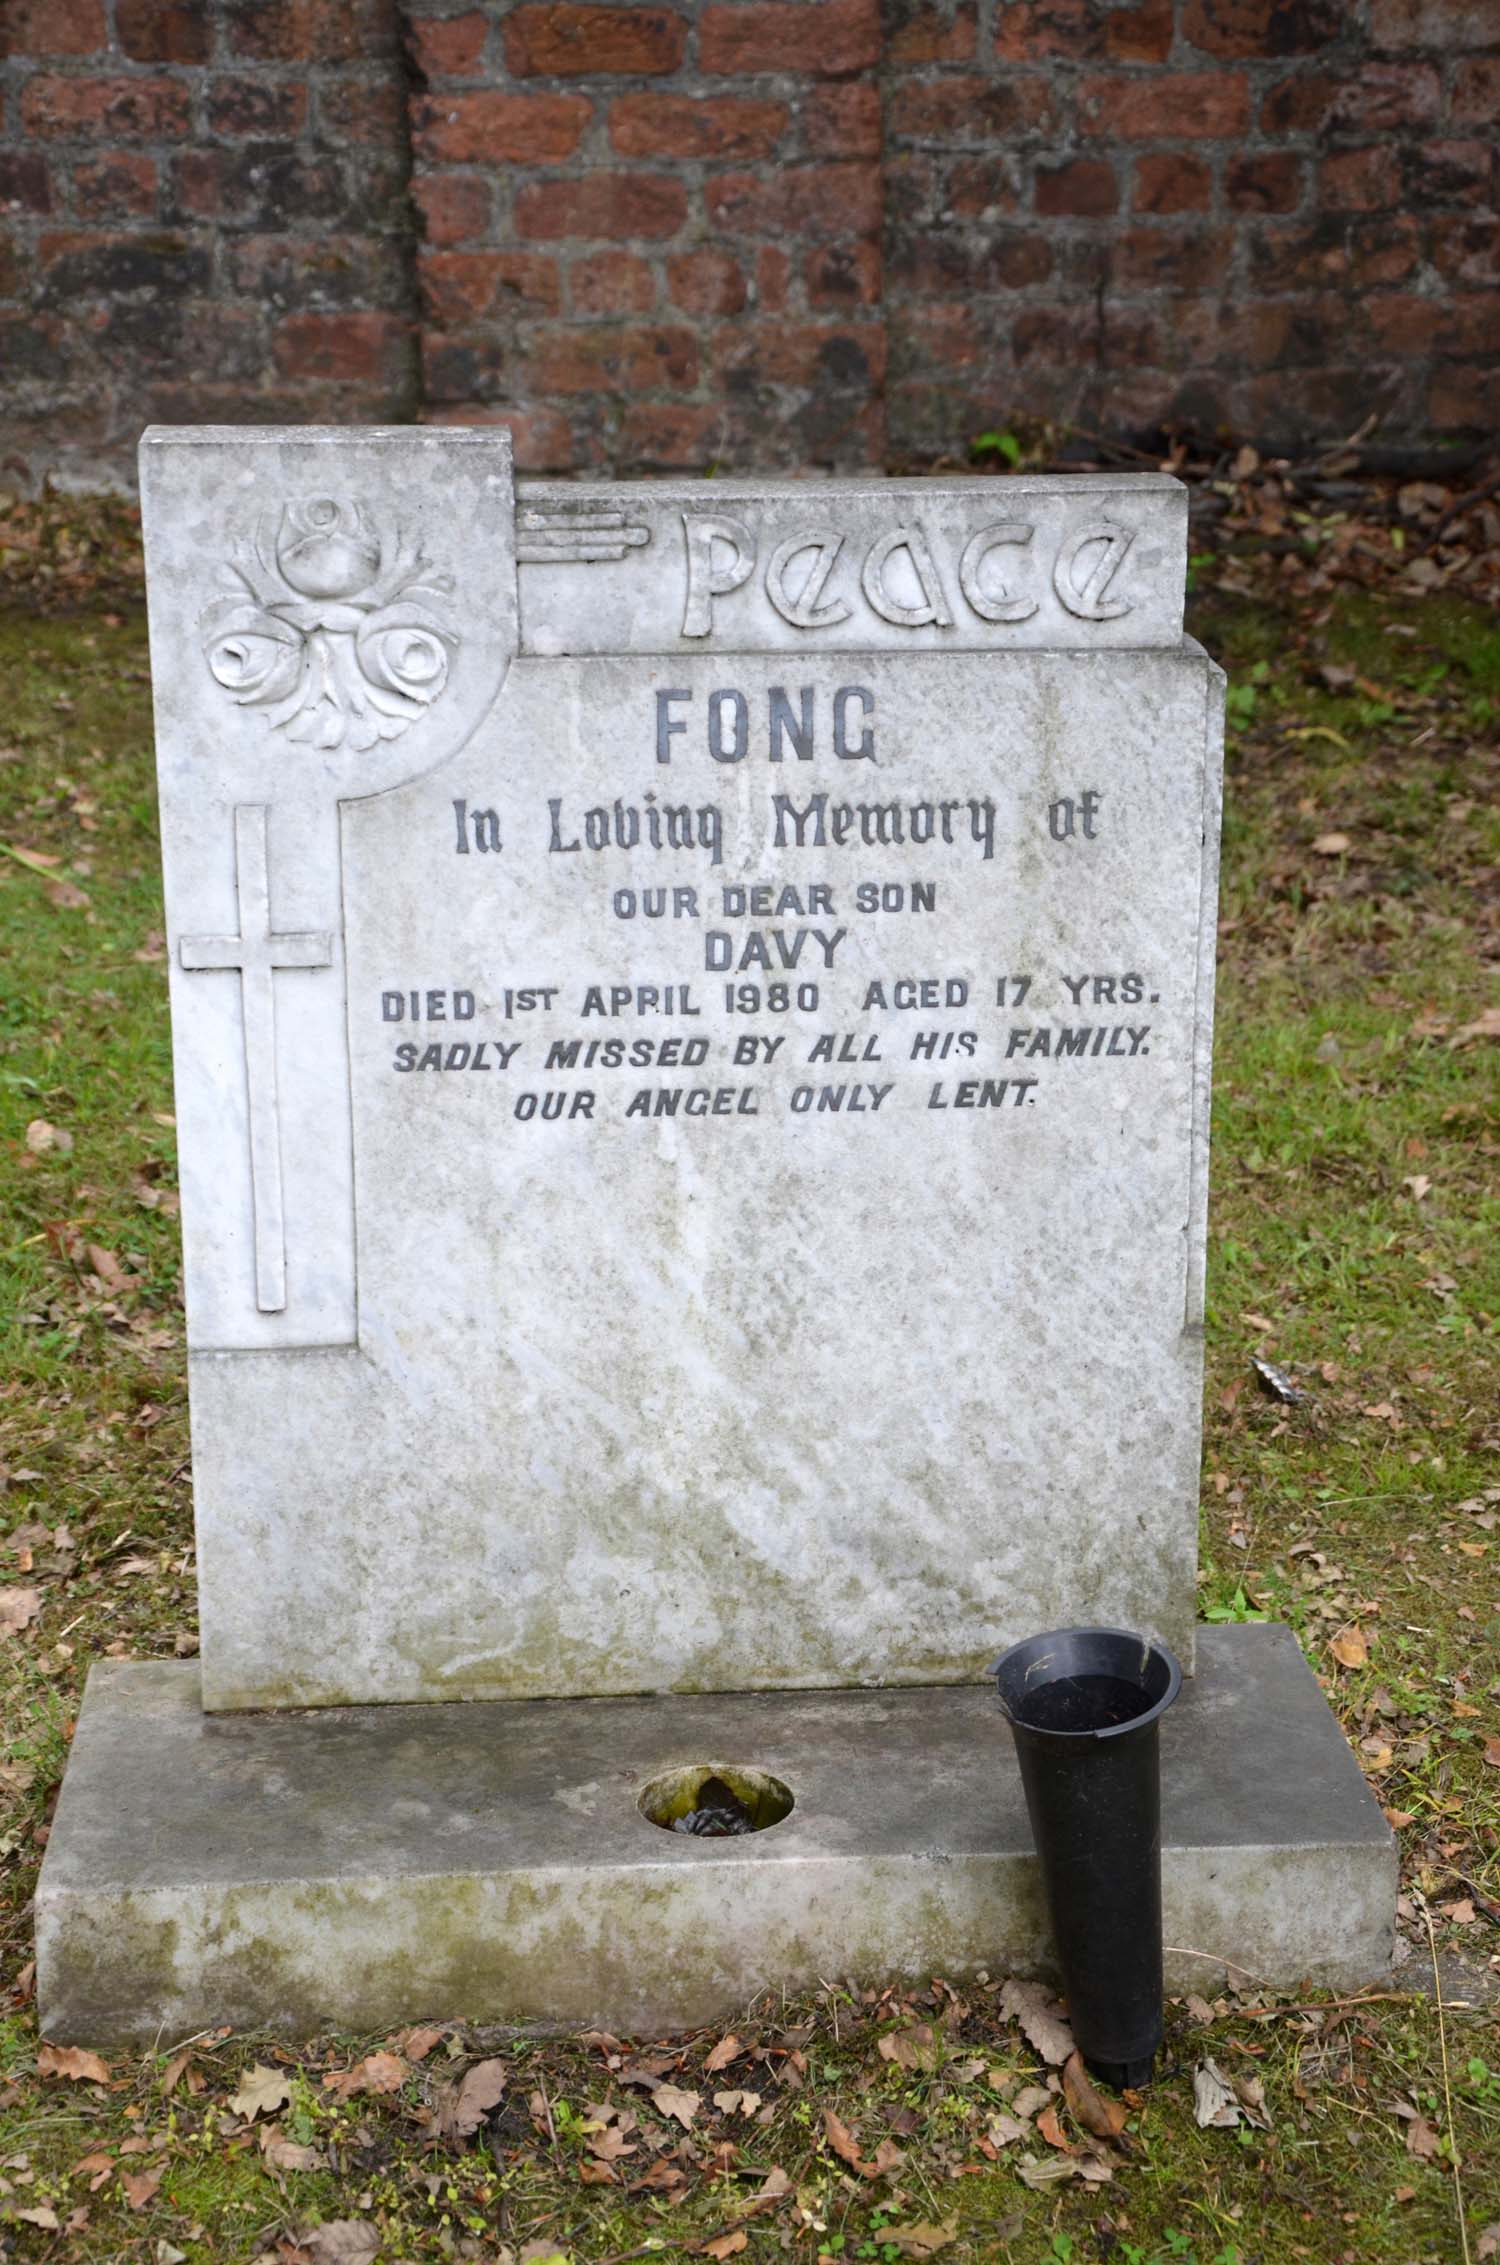 Fong, David Loni Chun (F Left 812)